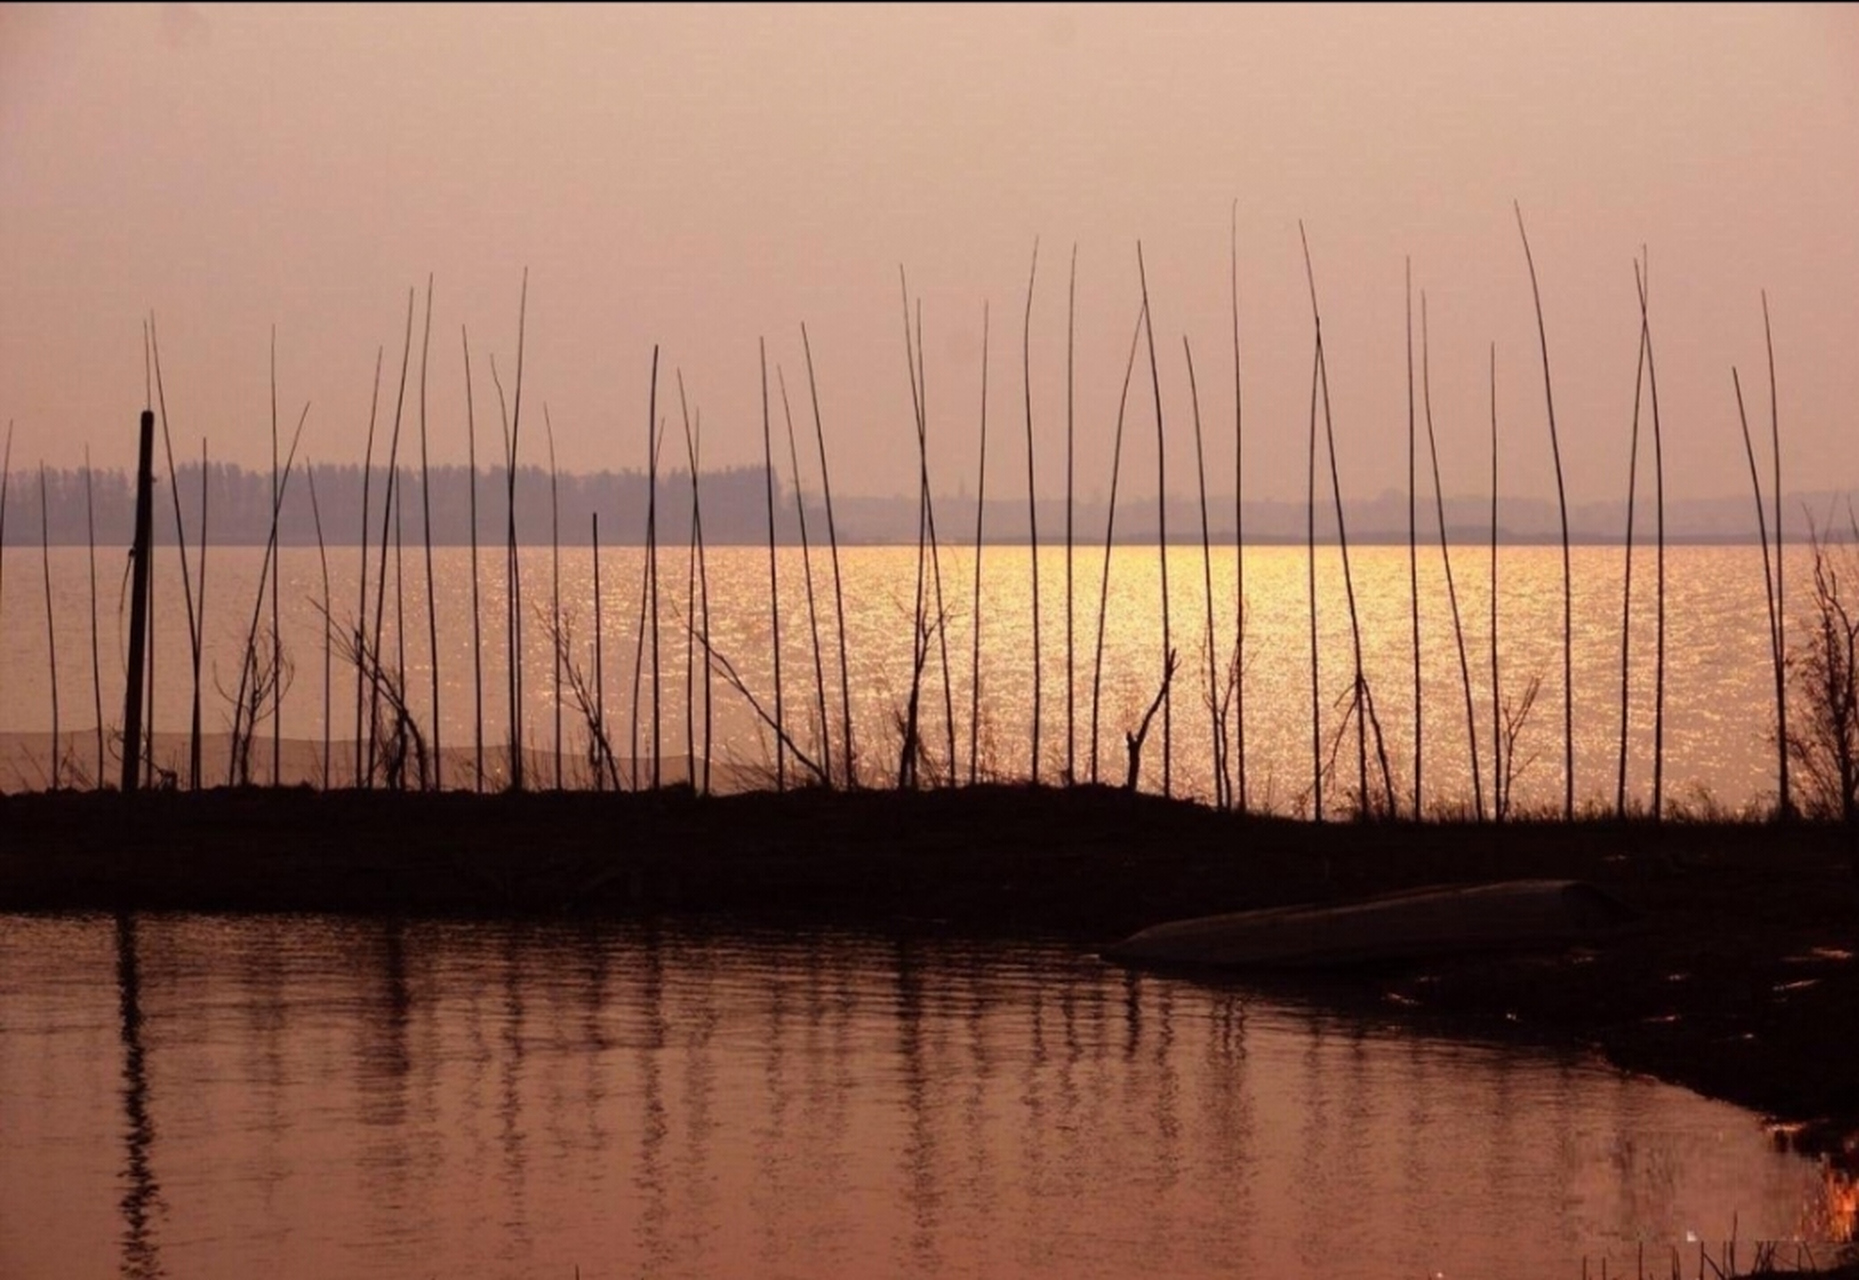 这个湖泊位于安徽桐城东南部,因沿湖儿童常嬉戏湖中而得名